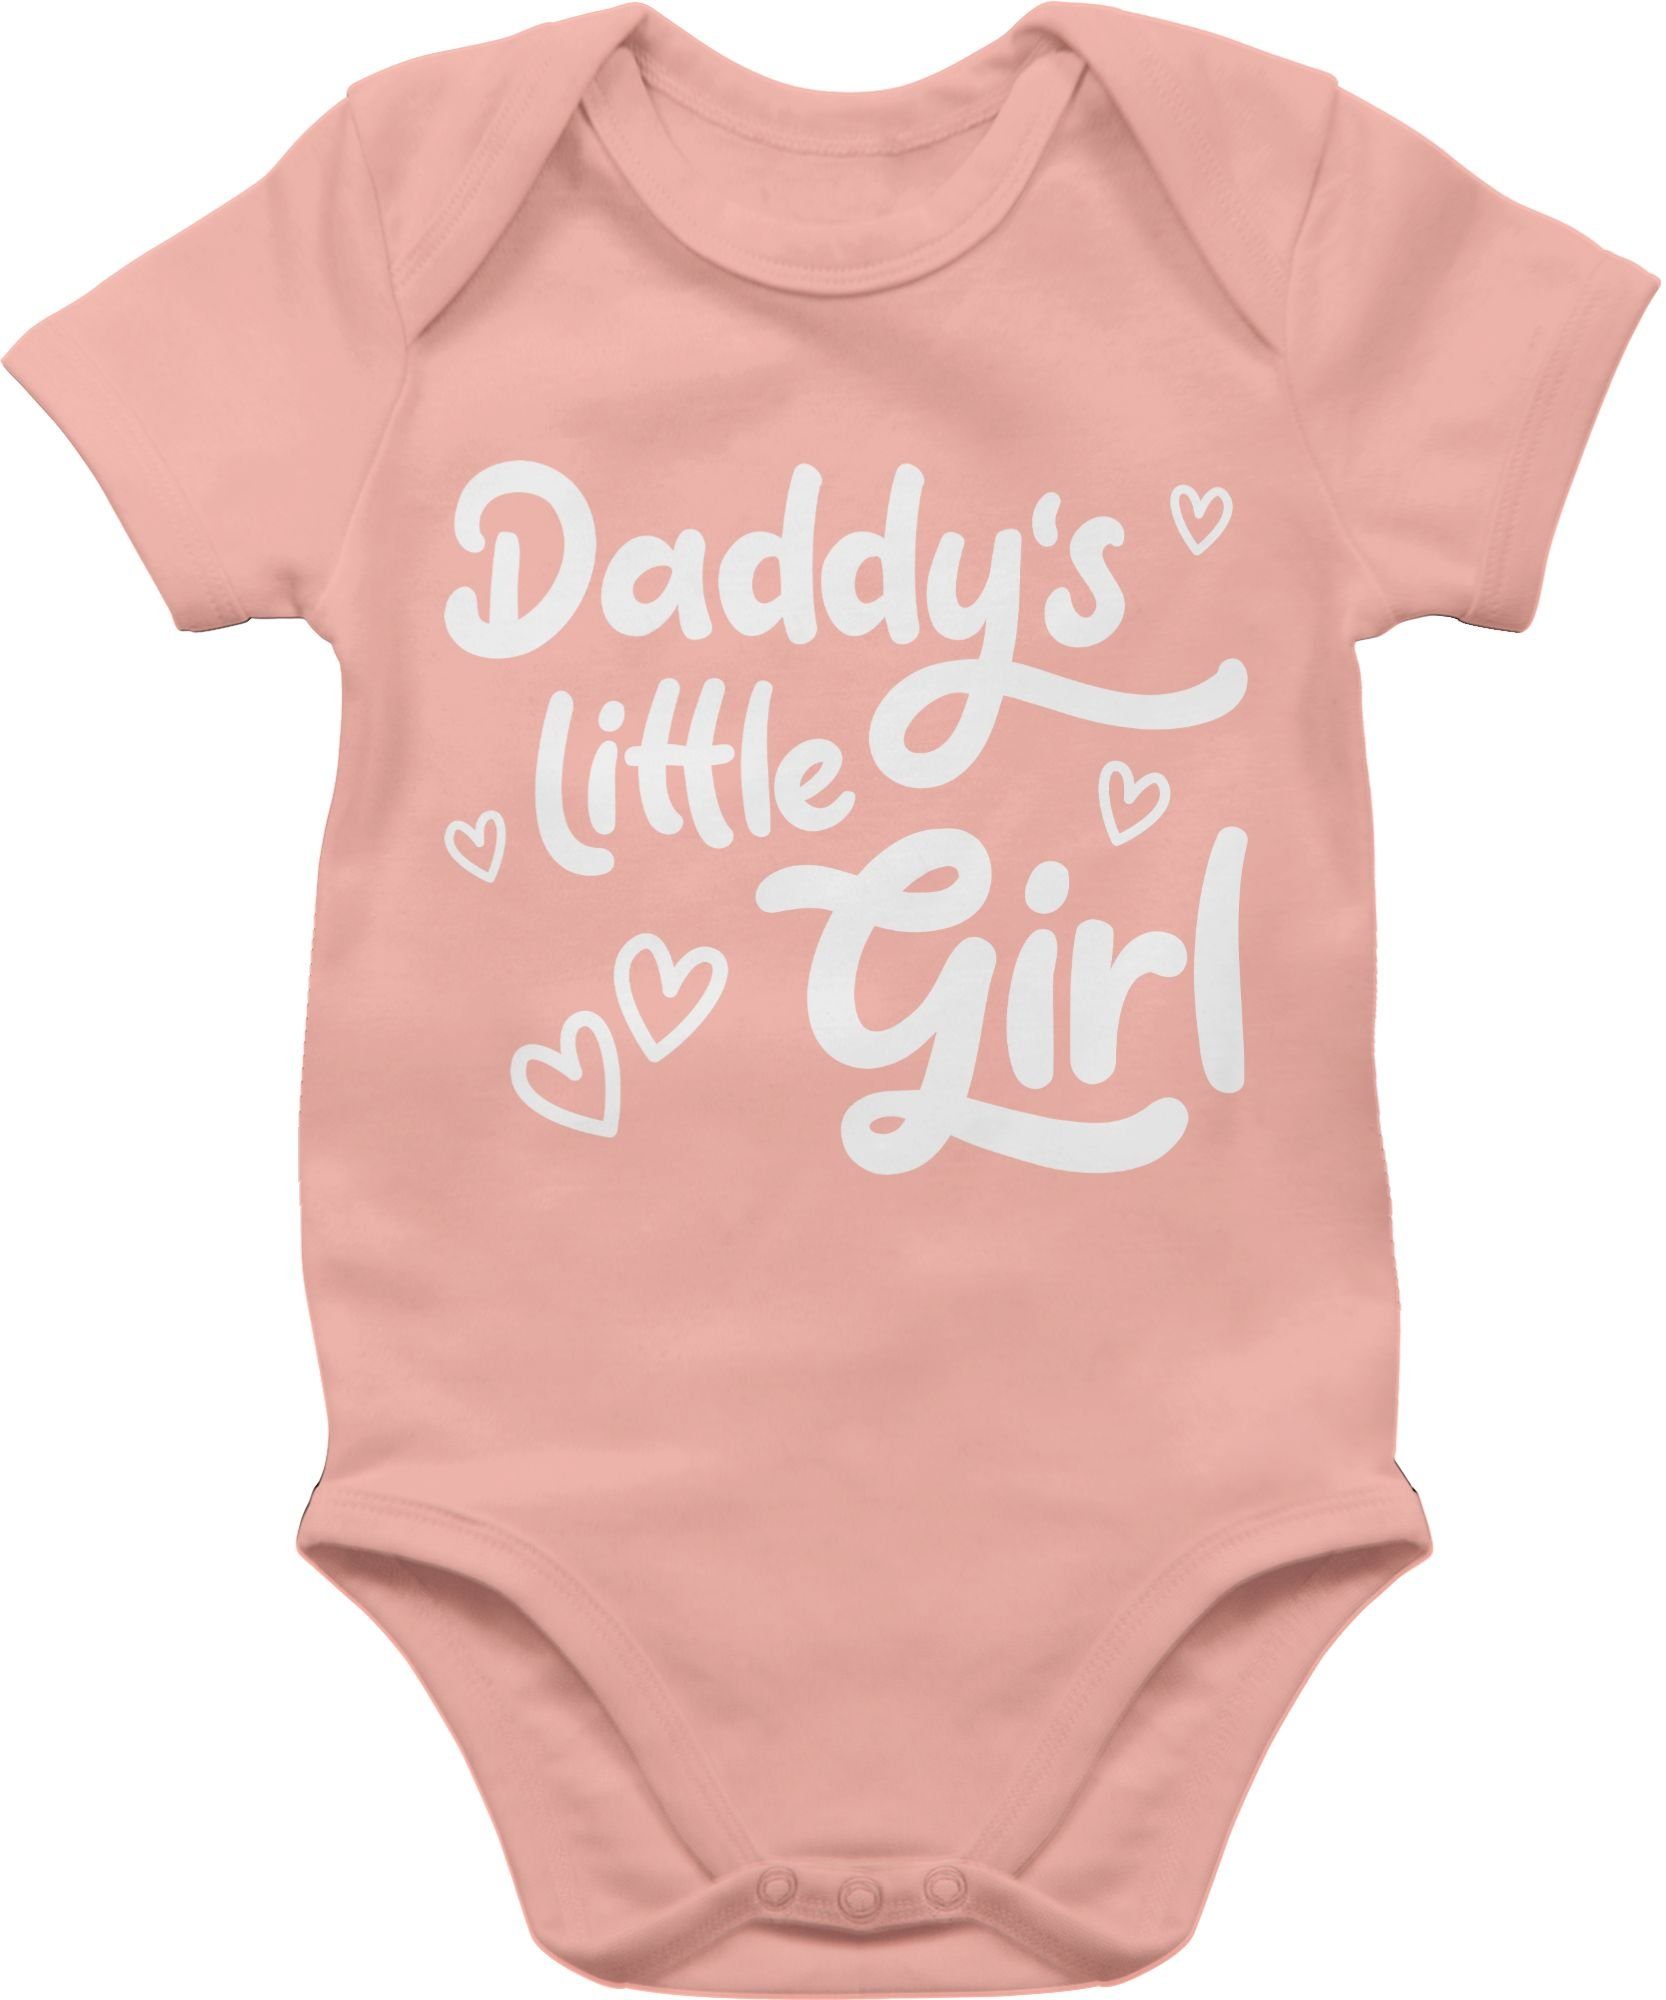 Shirtracer Geschenk Vatertag Baby Babyrosa little Girl Shirtbody Daddy's süß 1 weiß